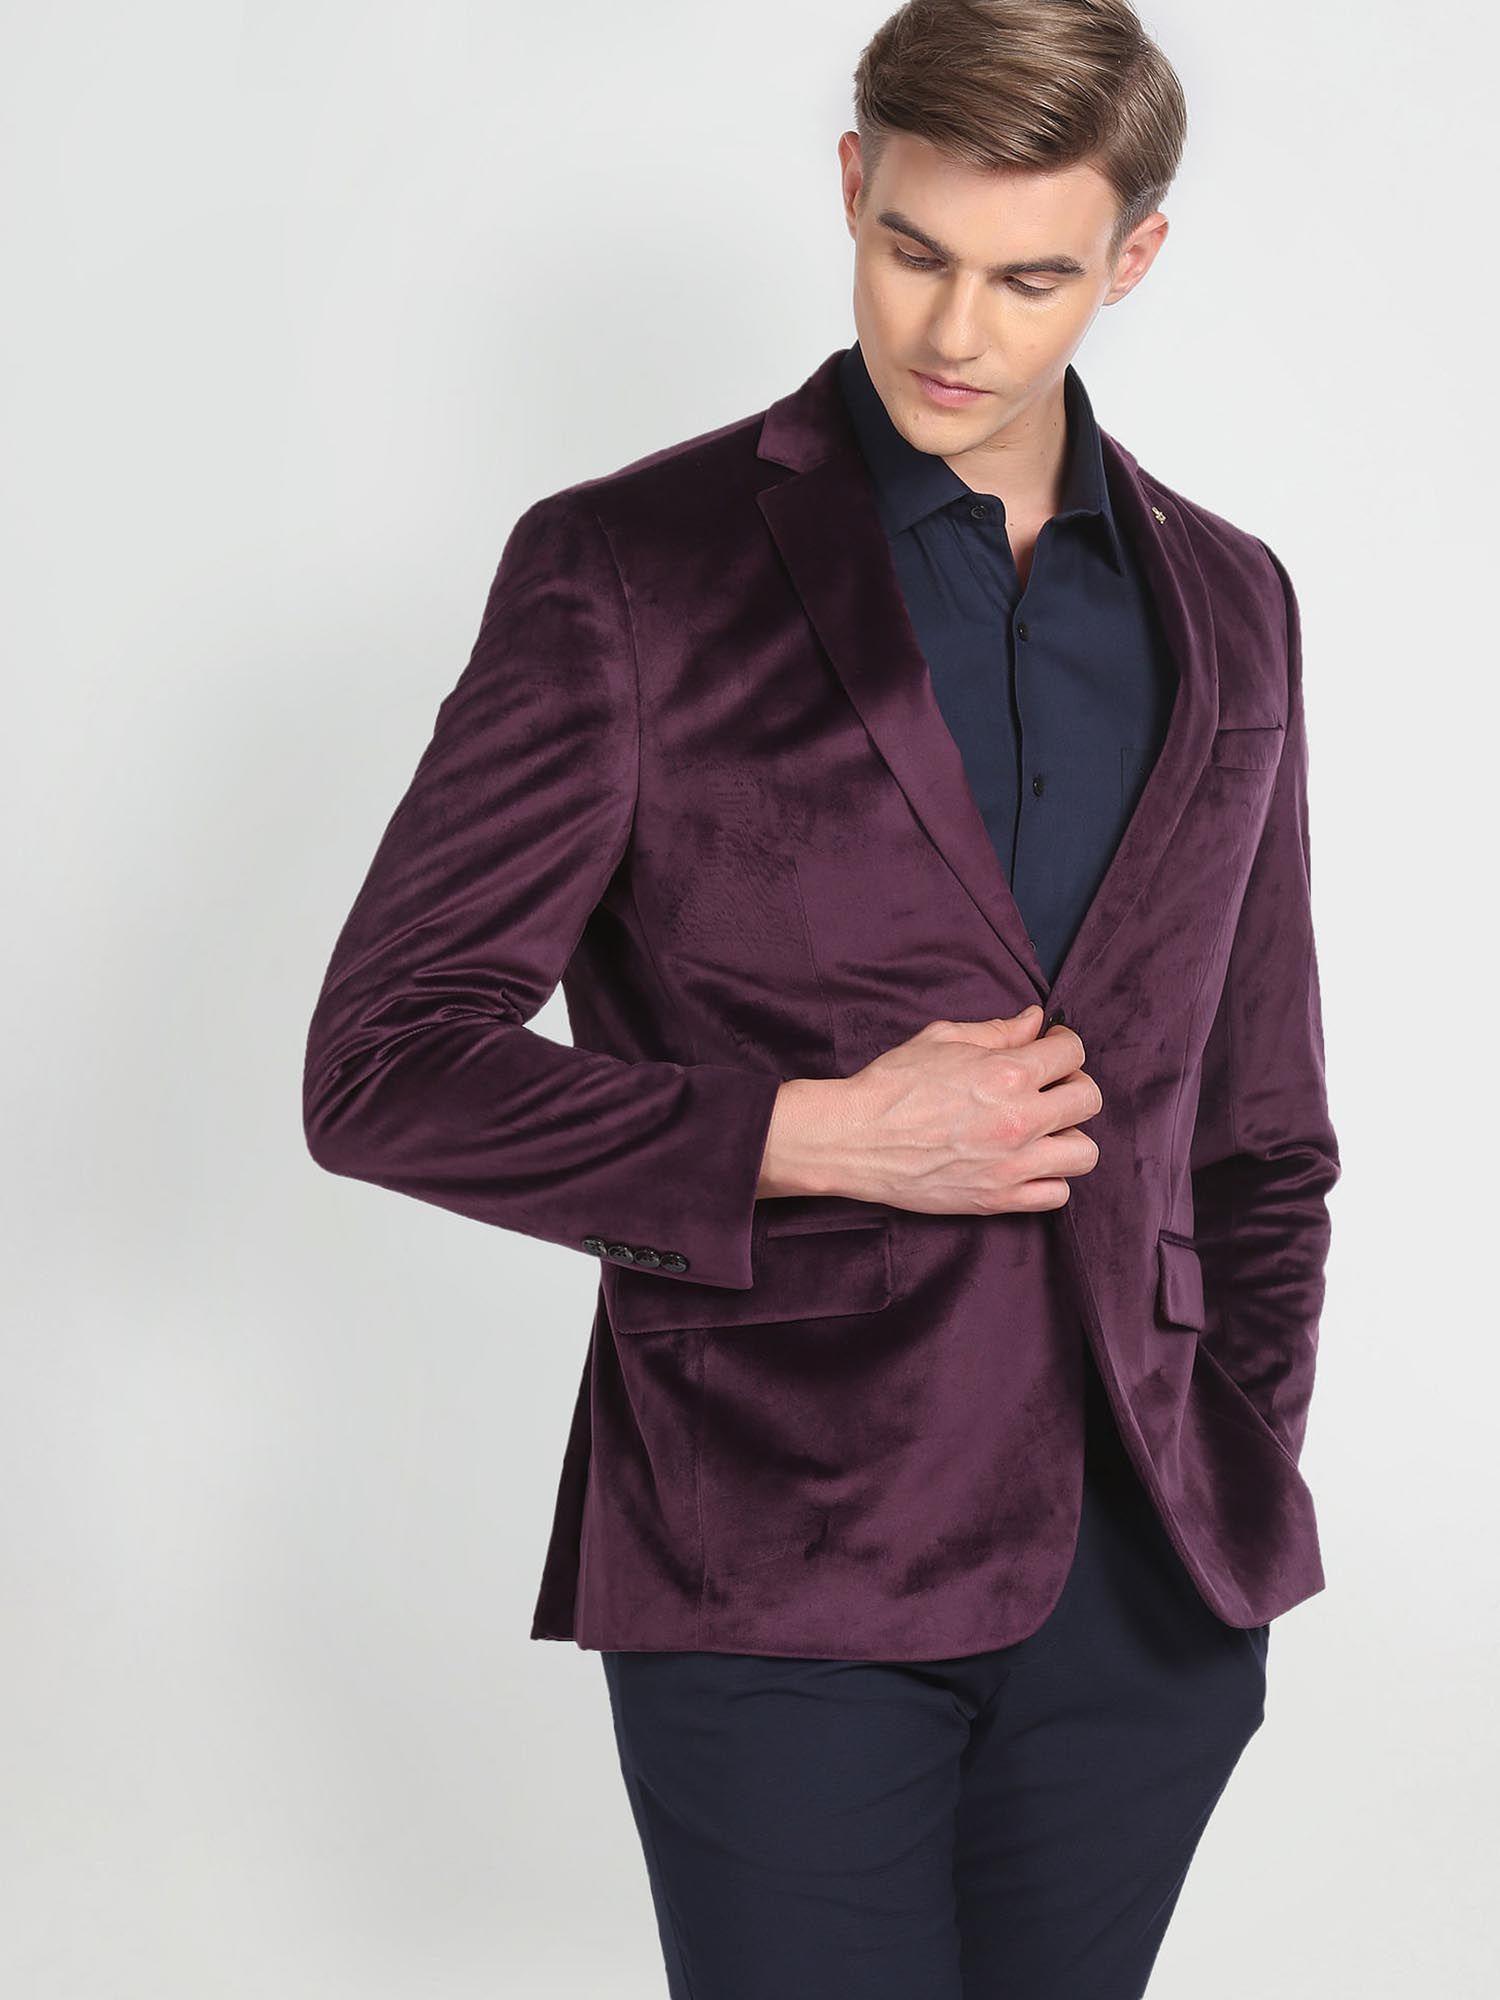 notch-lapel-collar-tailored-blazer